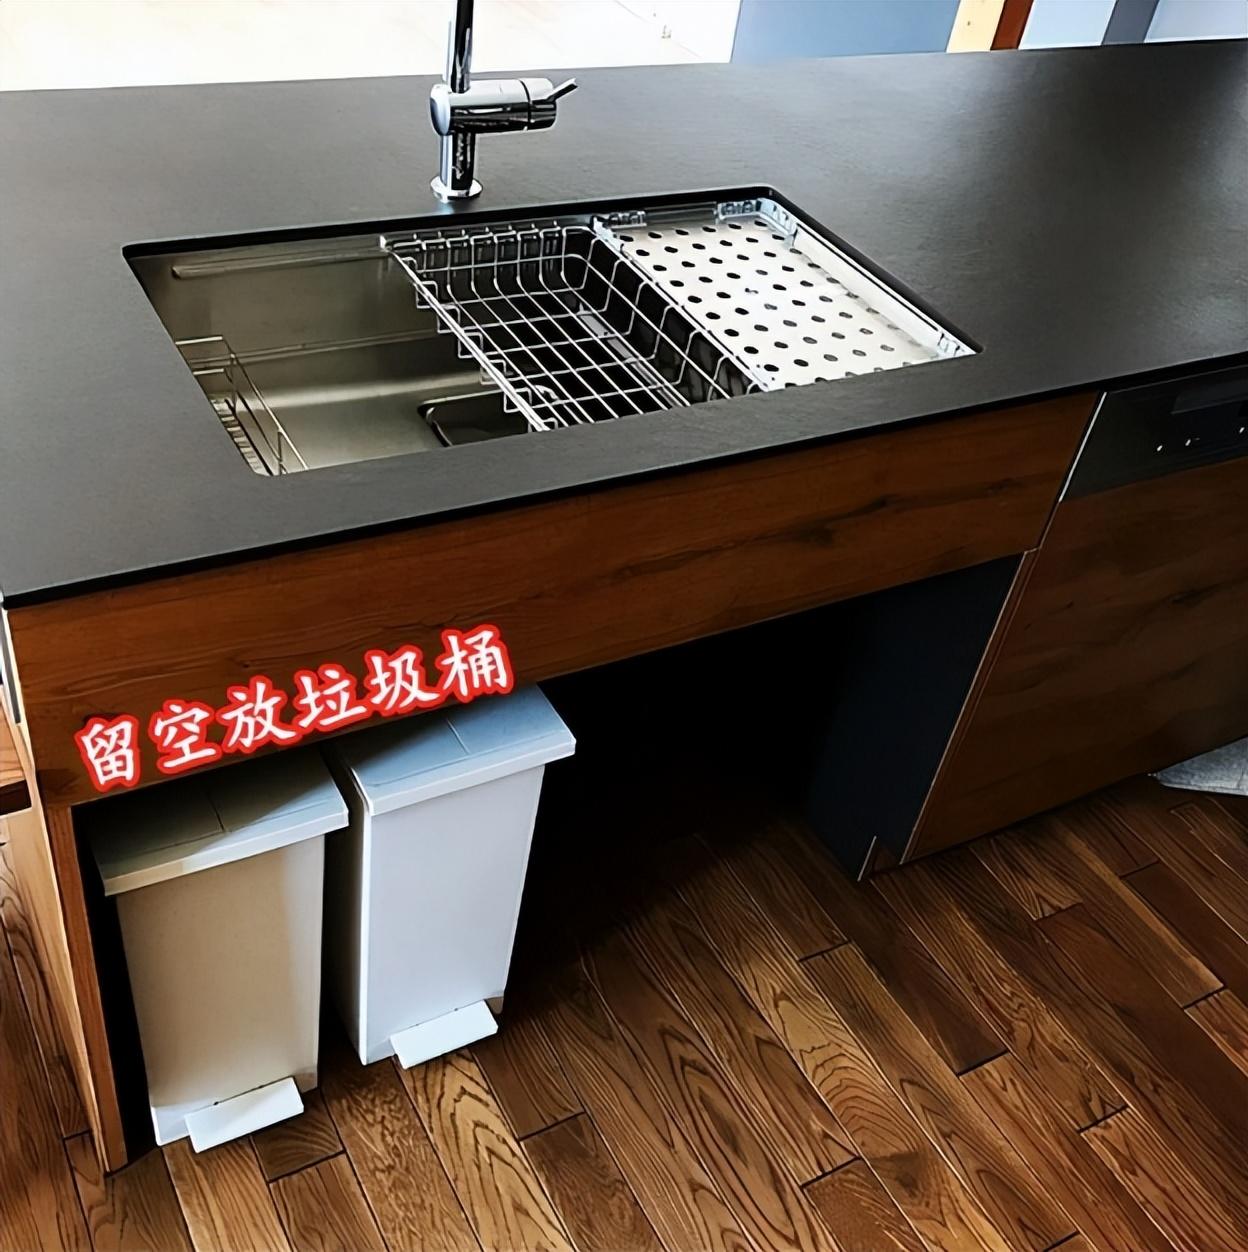 厨房的装修建议 选好位置与大小空出一些更便捷!